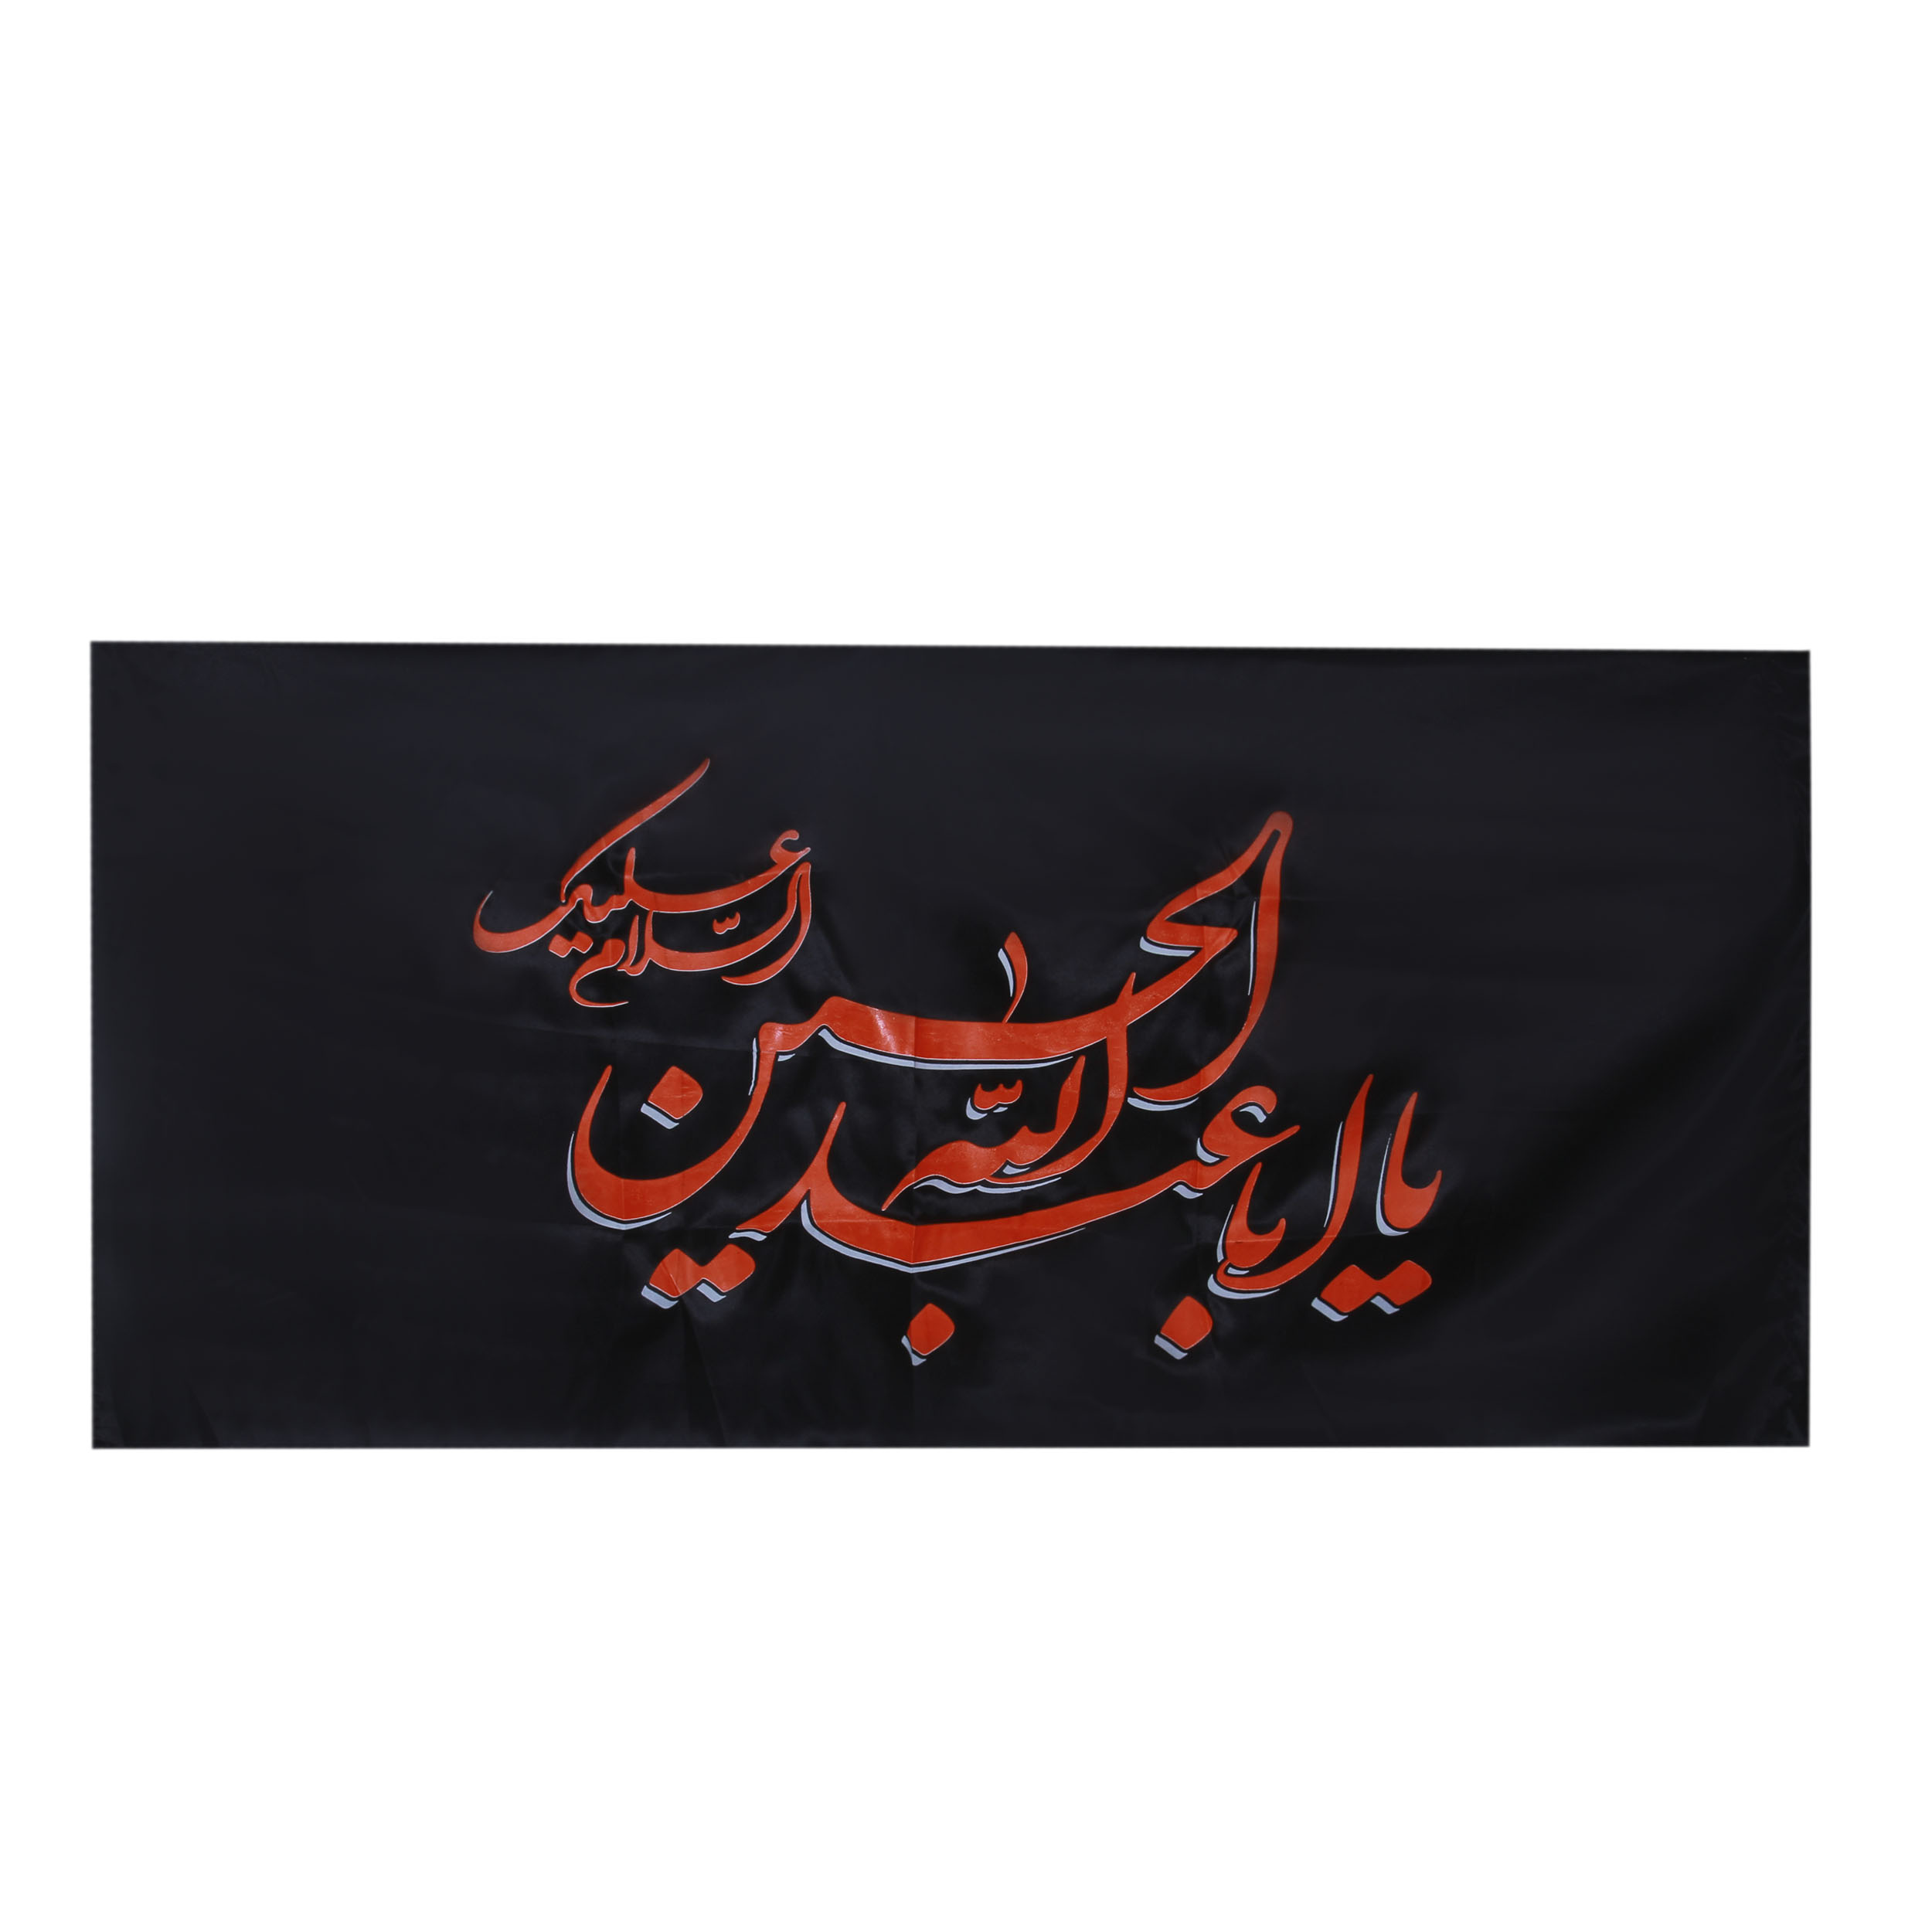 پرچم  بازرگانی میلادی مدل دیواری طرح مذهبی یااباعبدالله الحسین علیه السلام کد PAR-114